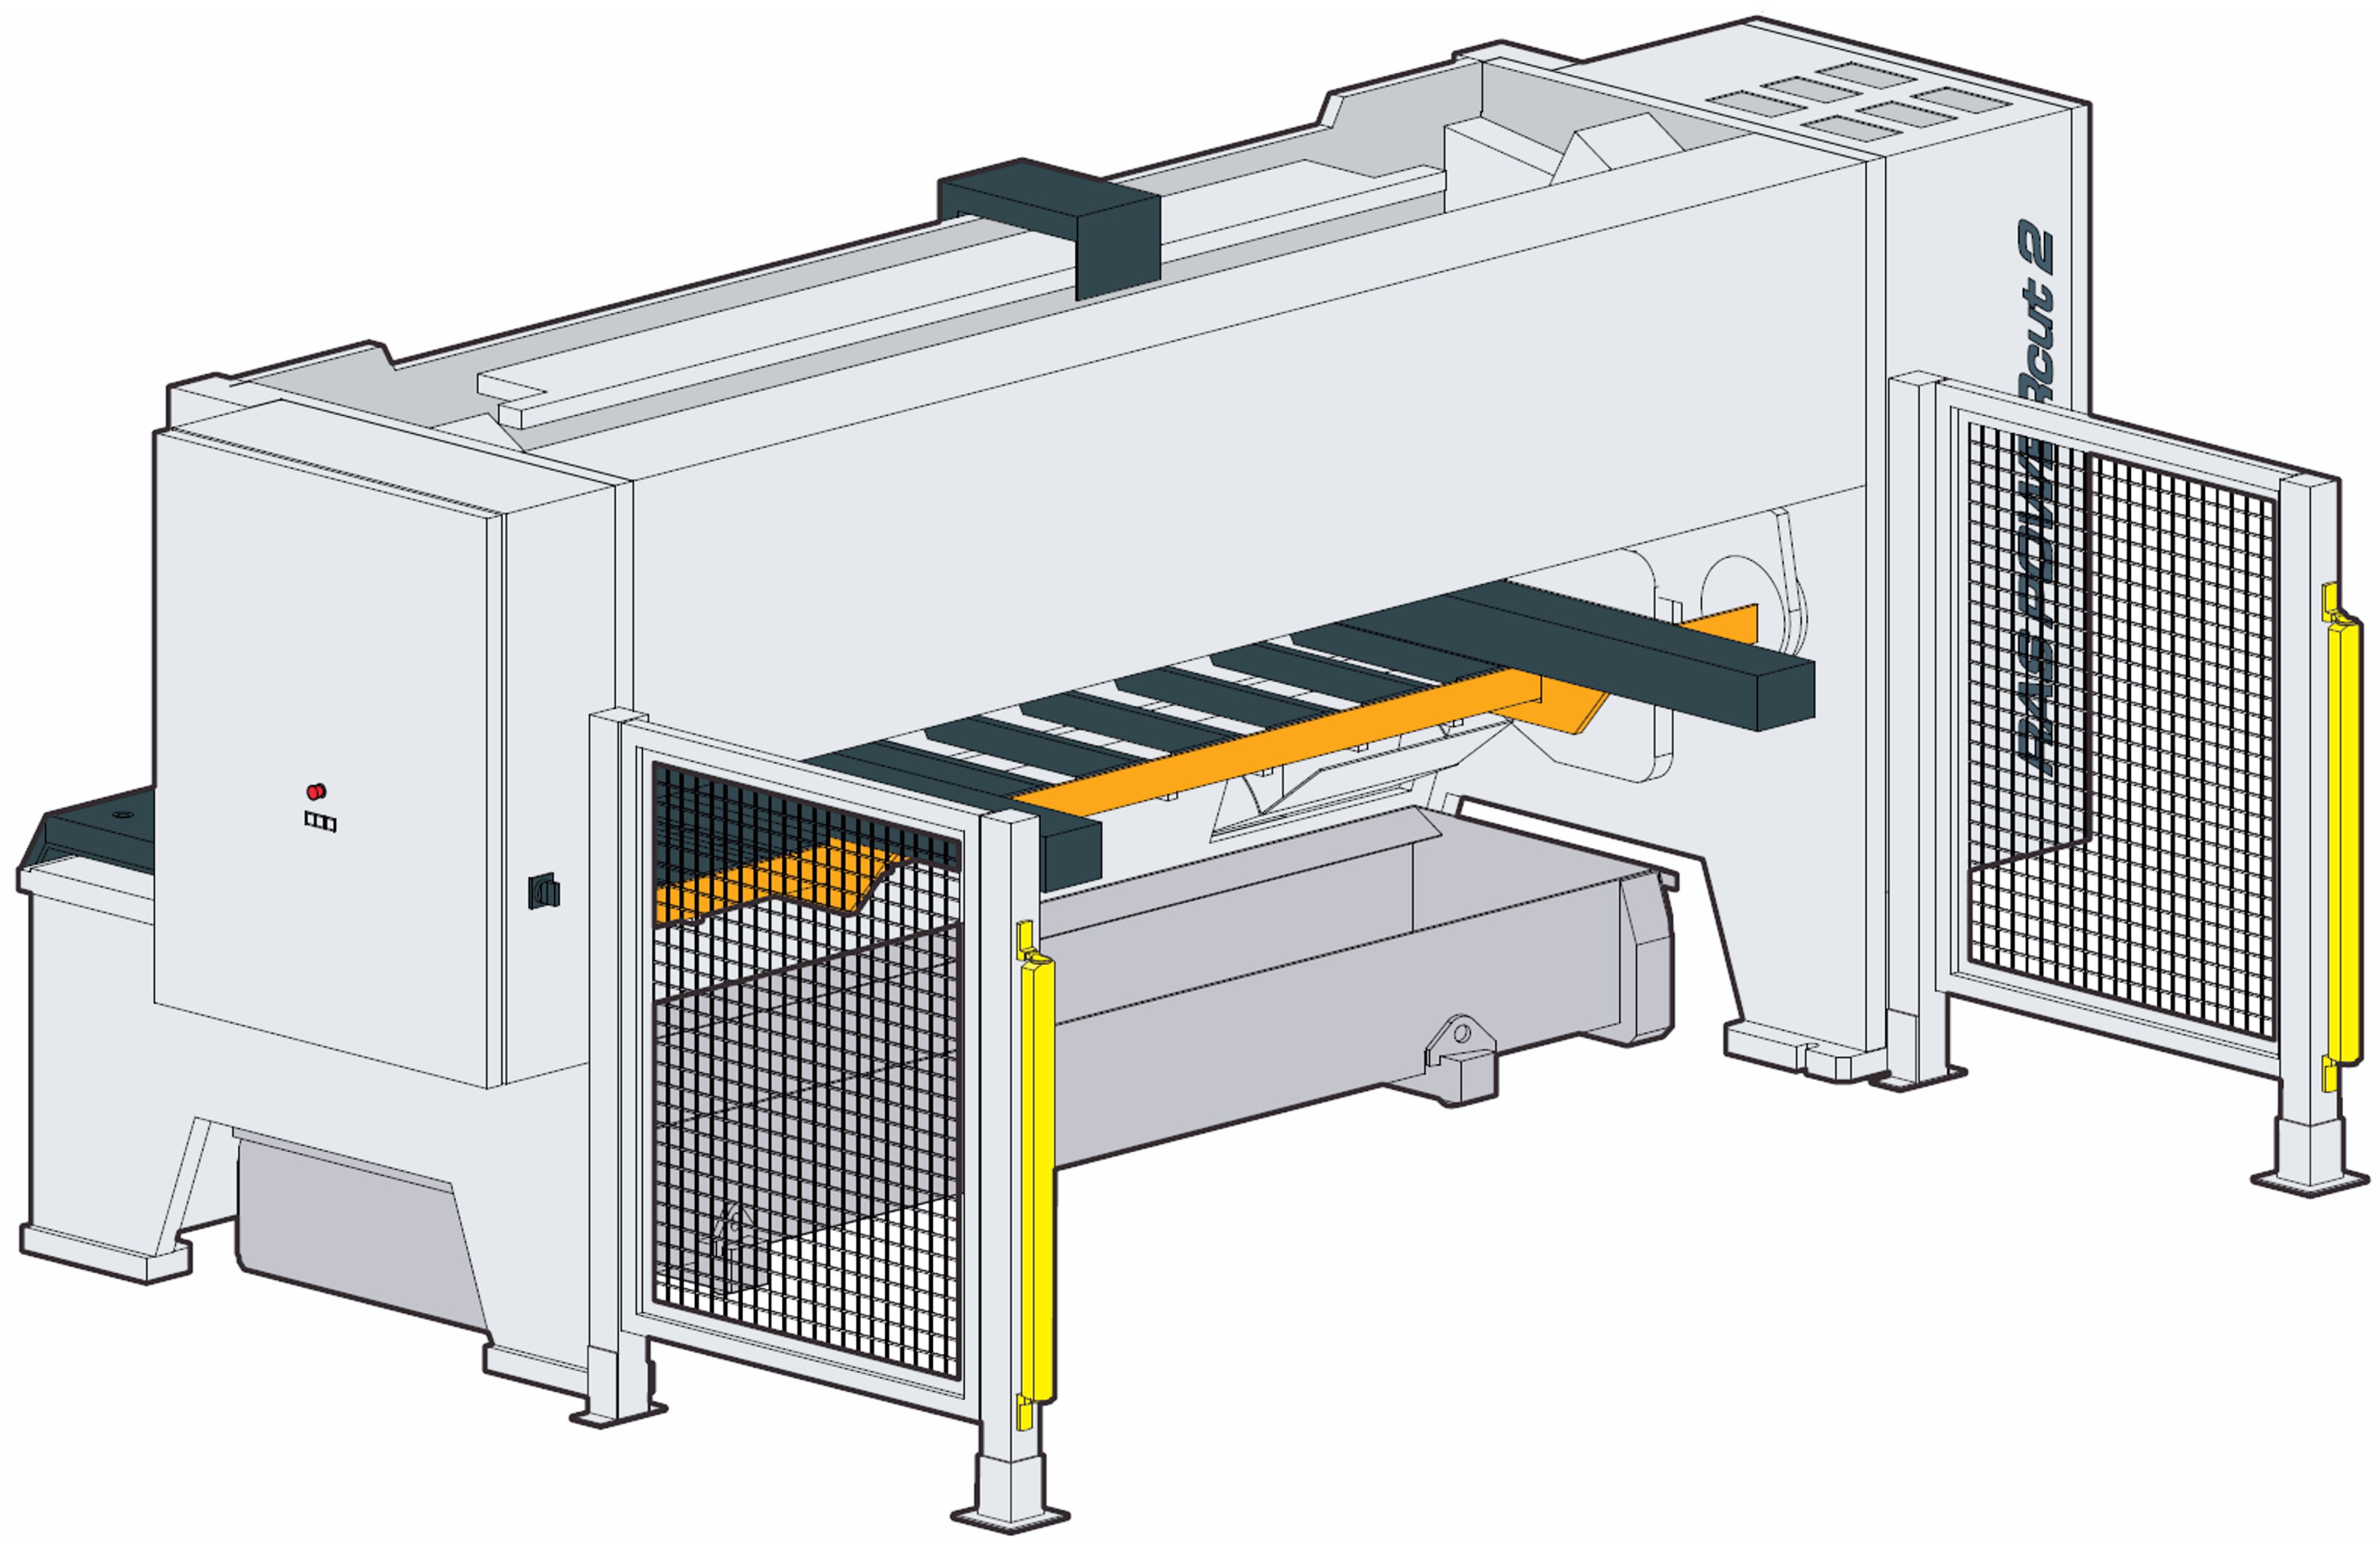 Schwingschnittschere POWERcut 2 mit Hochhaltesystem und CNC Hinteranschlag